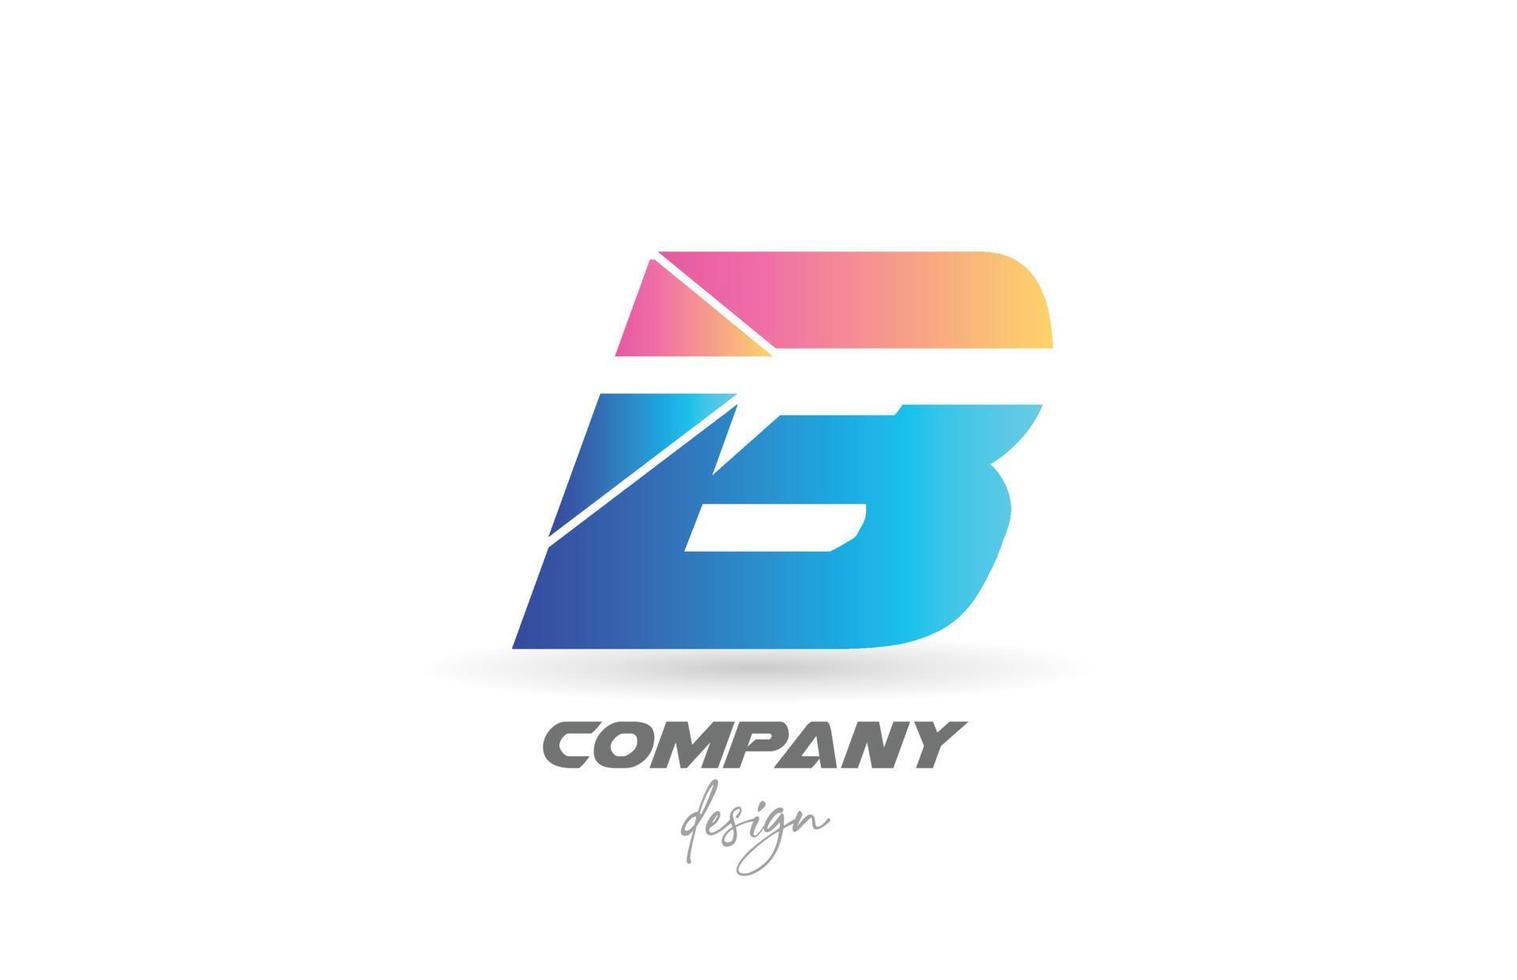 kleurrijke b alfabet letterpictogram logo met gesneden ontwerp en blauw roze kleuren. creatieve sjabloon voor zaken en bedrijf vector